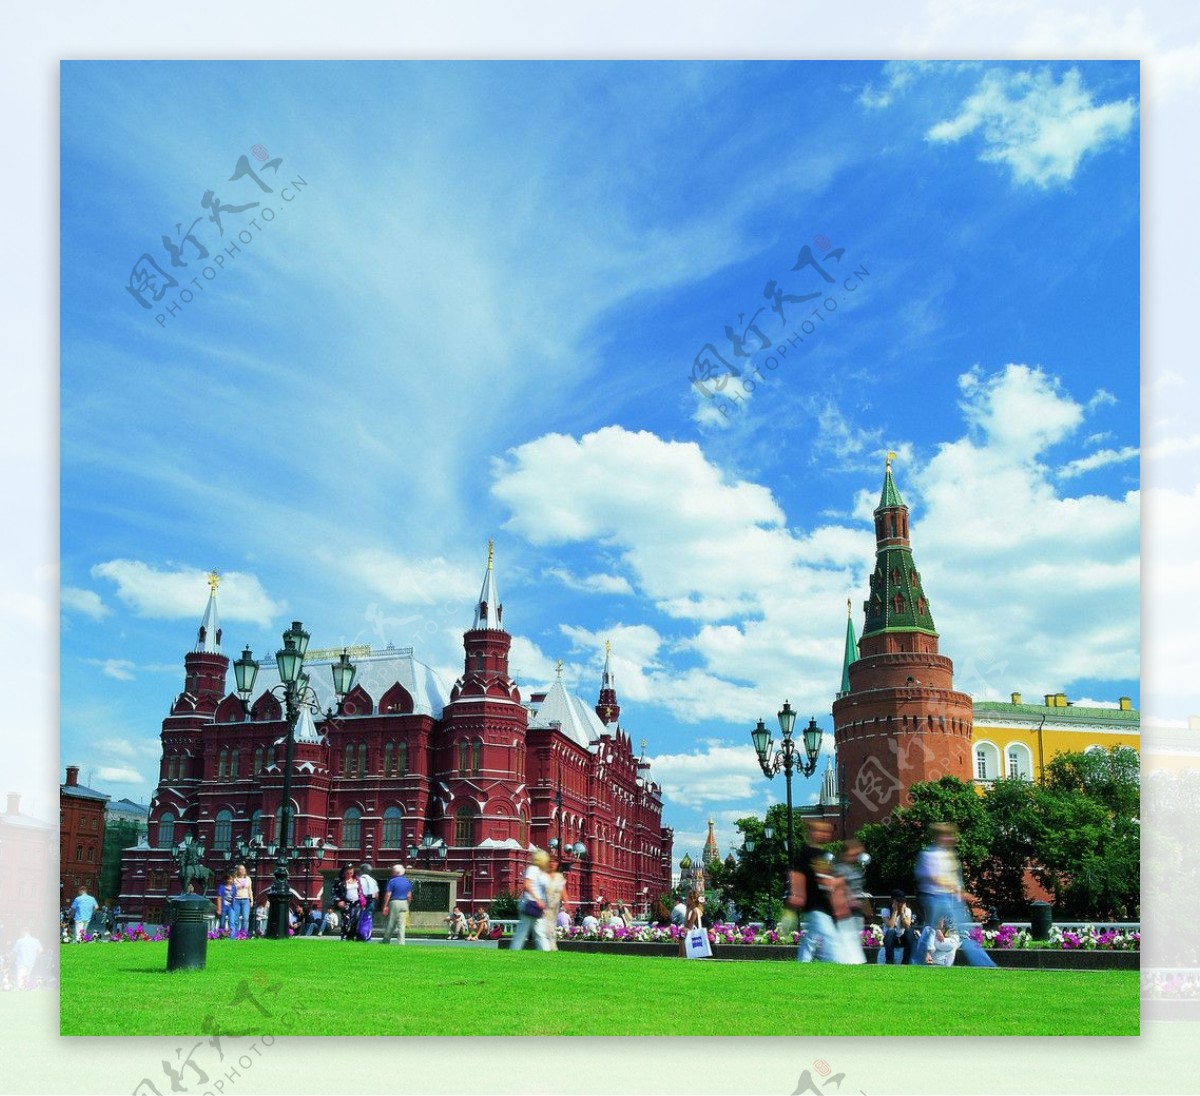 风景名胜建筑景观自然风景旅游印记莫斯科图片